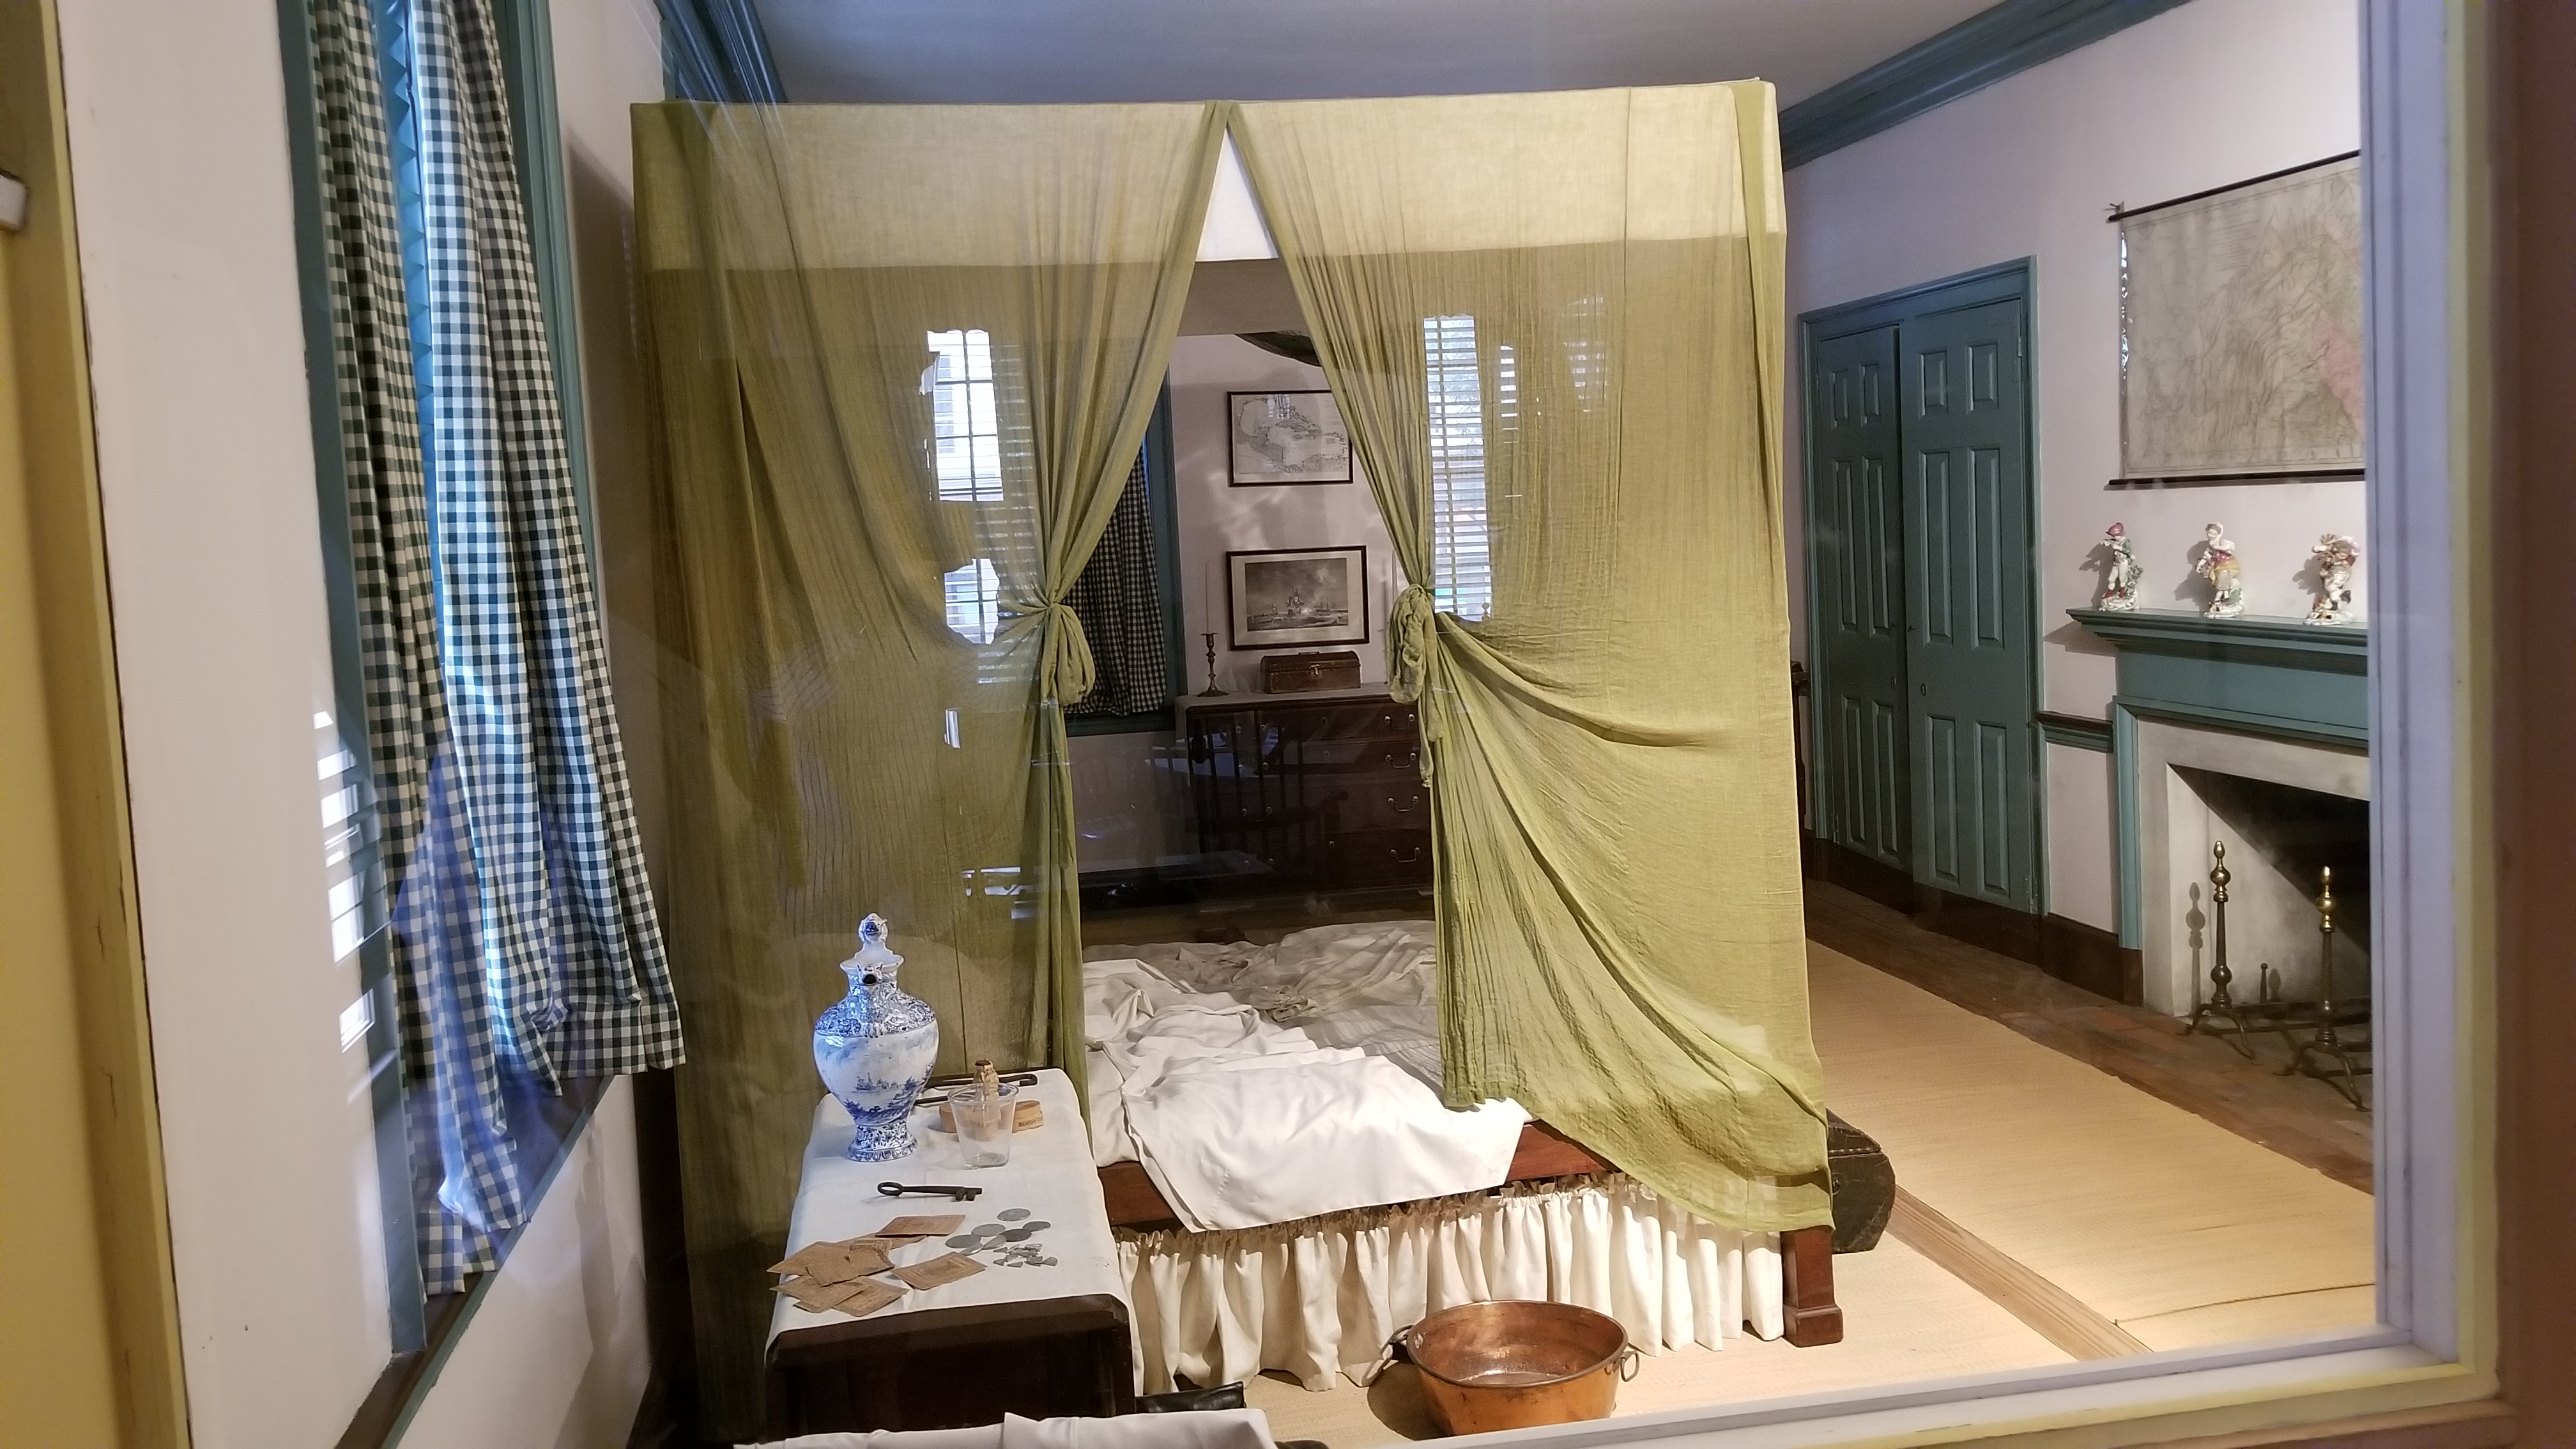 Thomas Jefferson's rented bedroom